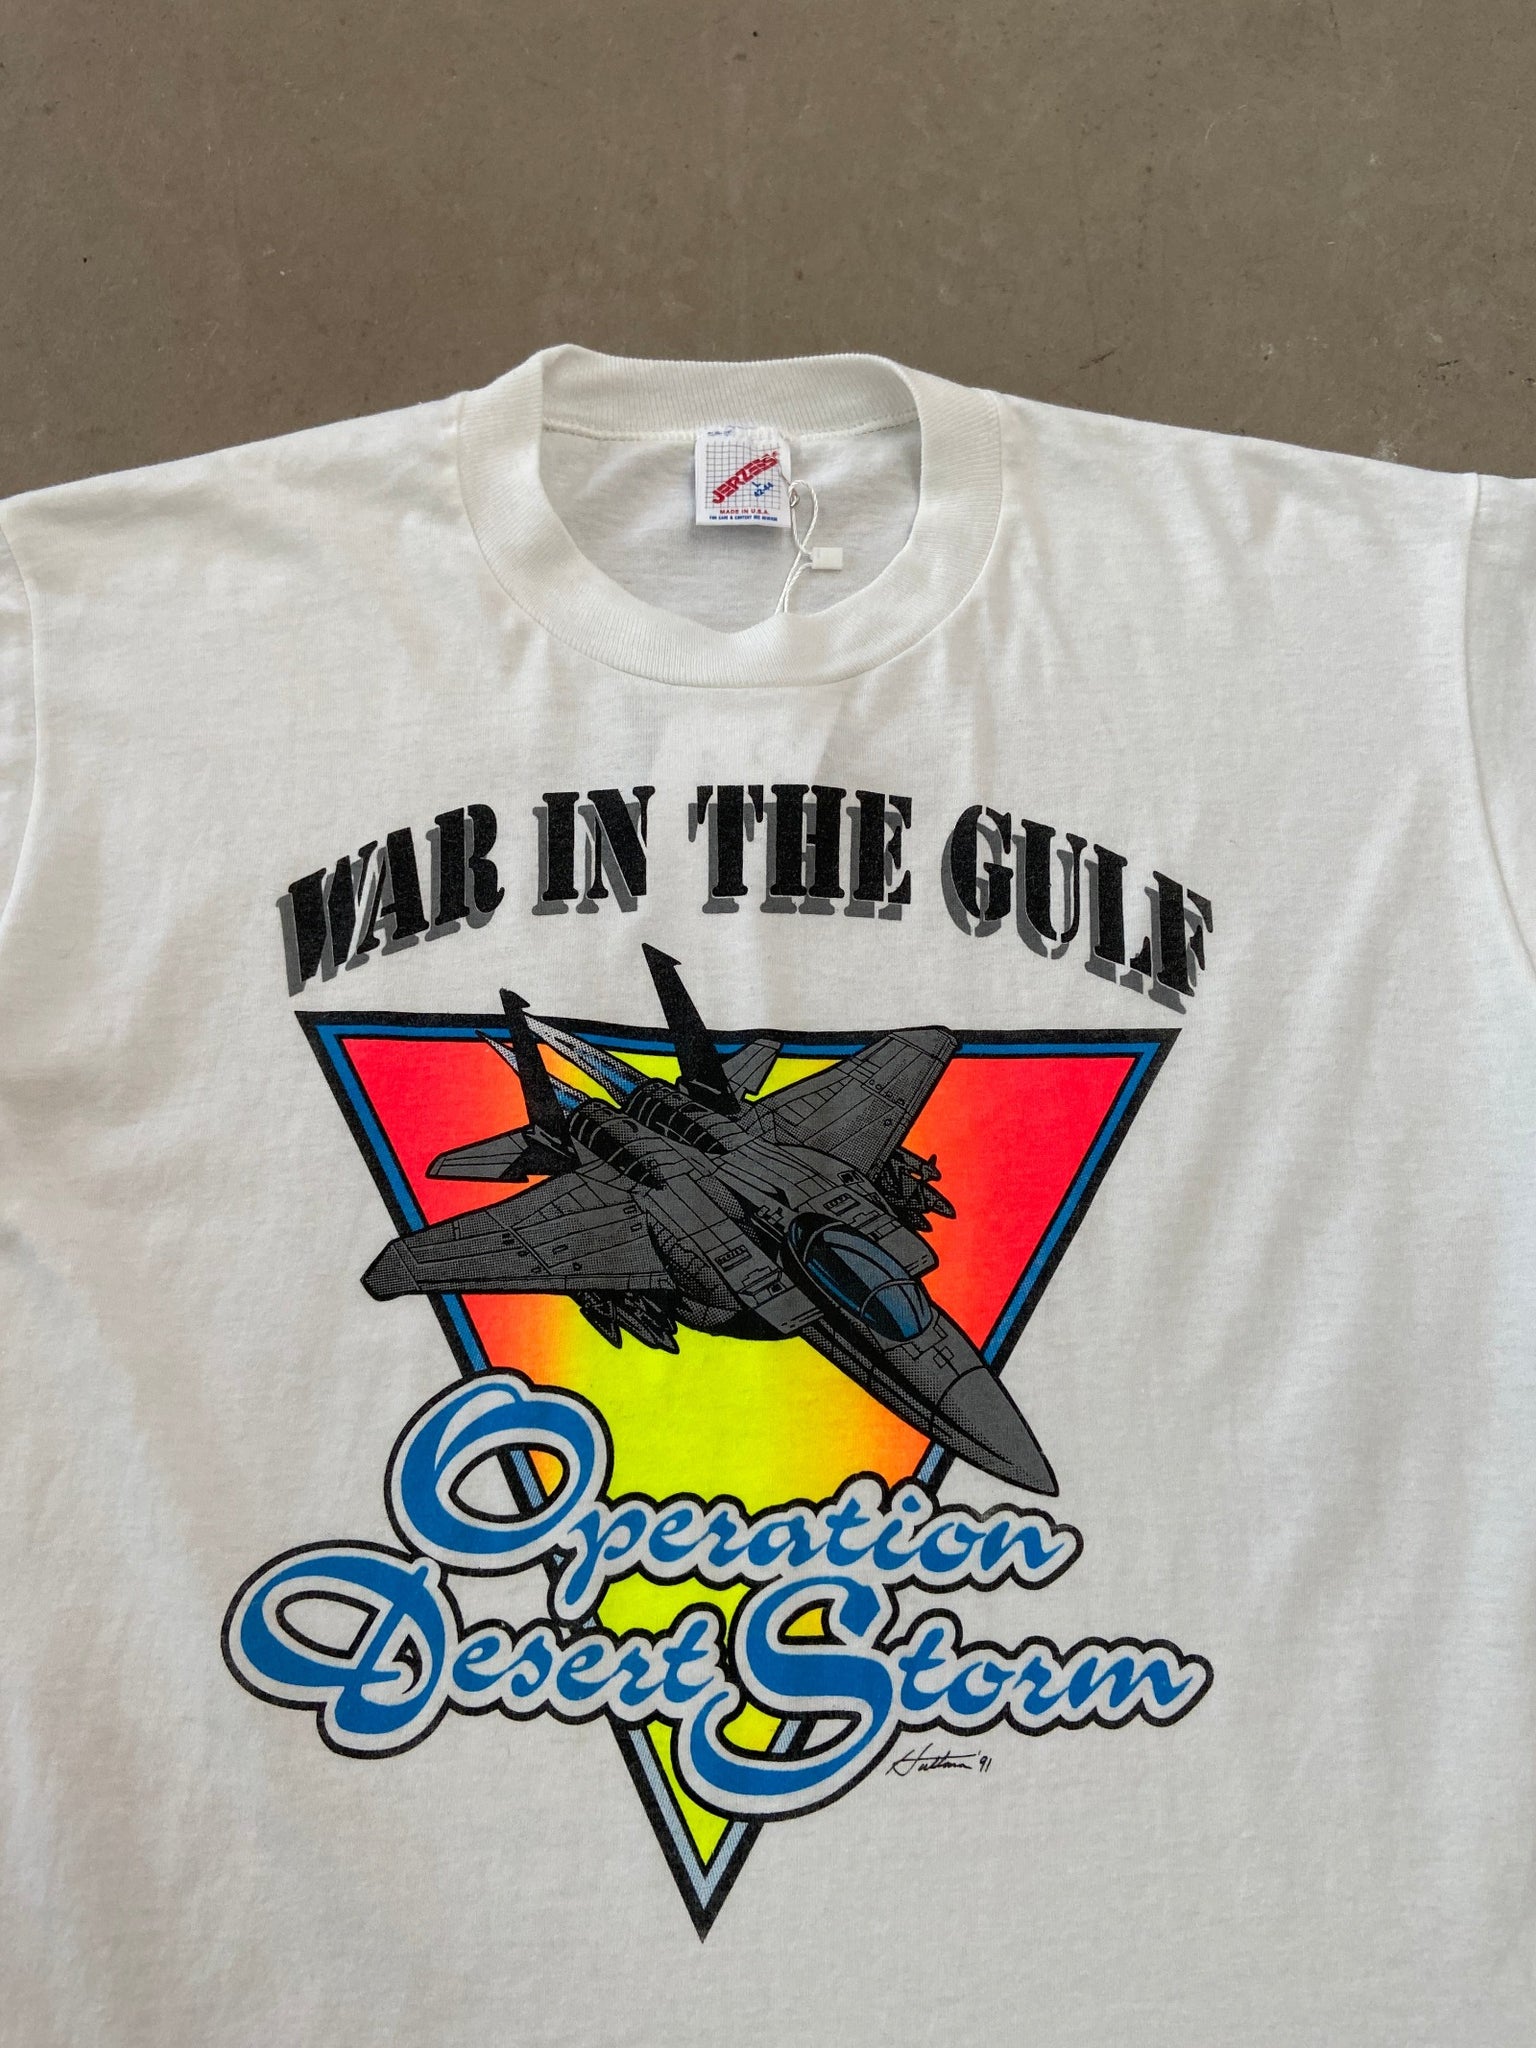 1991 War in the Gulf T-shirt - L